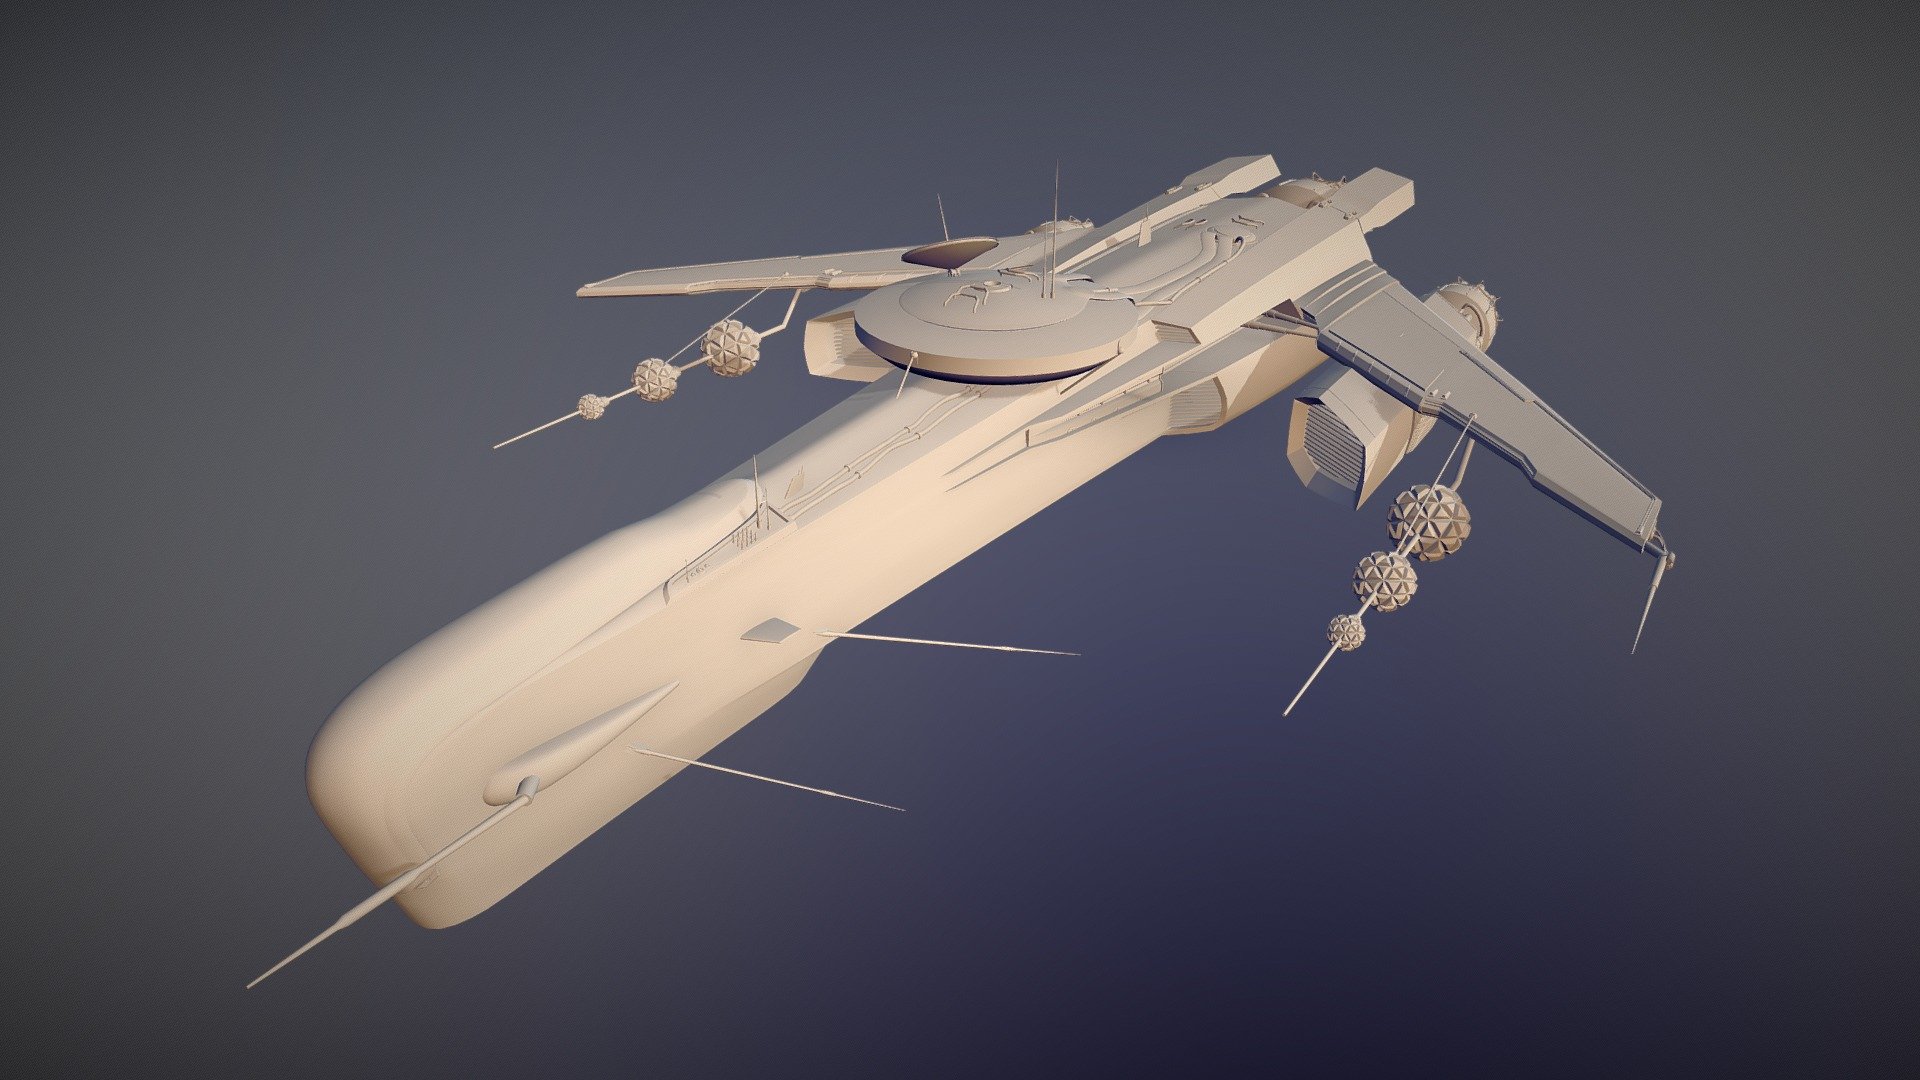 Sci-Fi Space Ship - 3D model by VicGonzalez (@vicgonzalez) [fd65412]